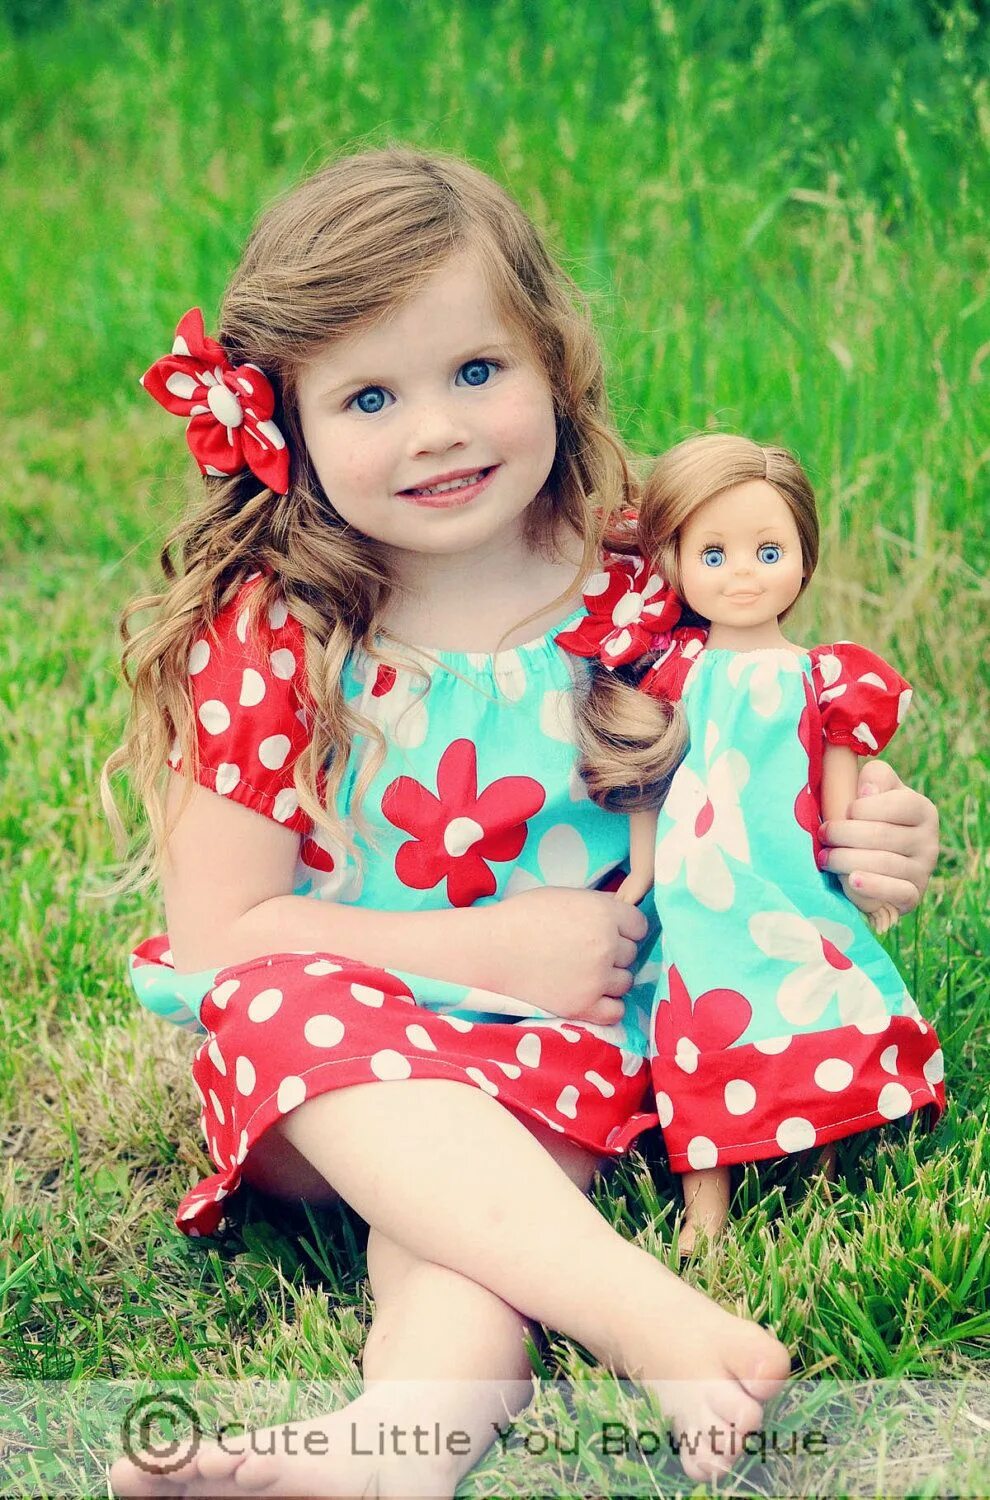 Дочка куколка. Куклы для девочек. Кукла дочка. Одинаковая для куклы и девочки. Дети играют в куклы.